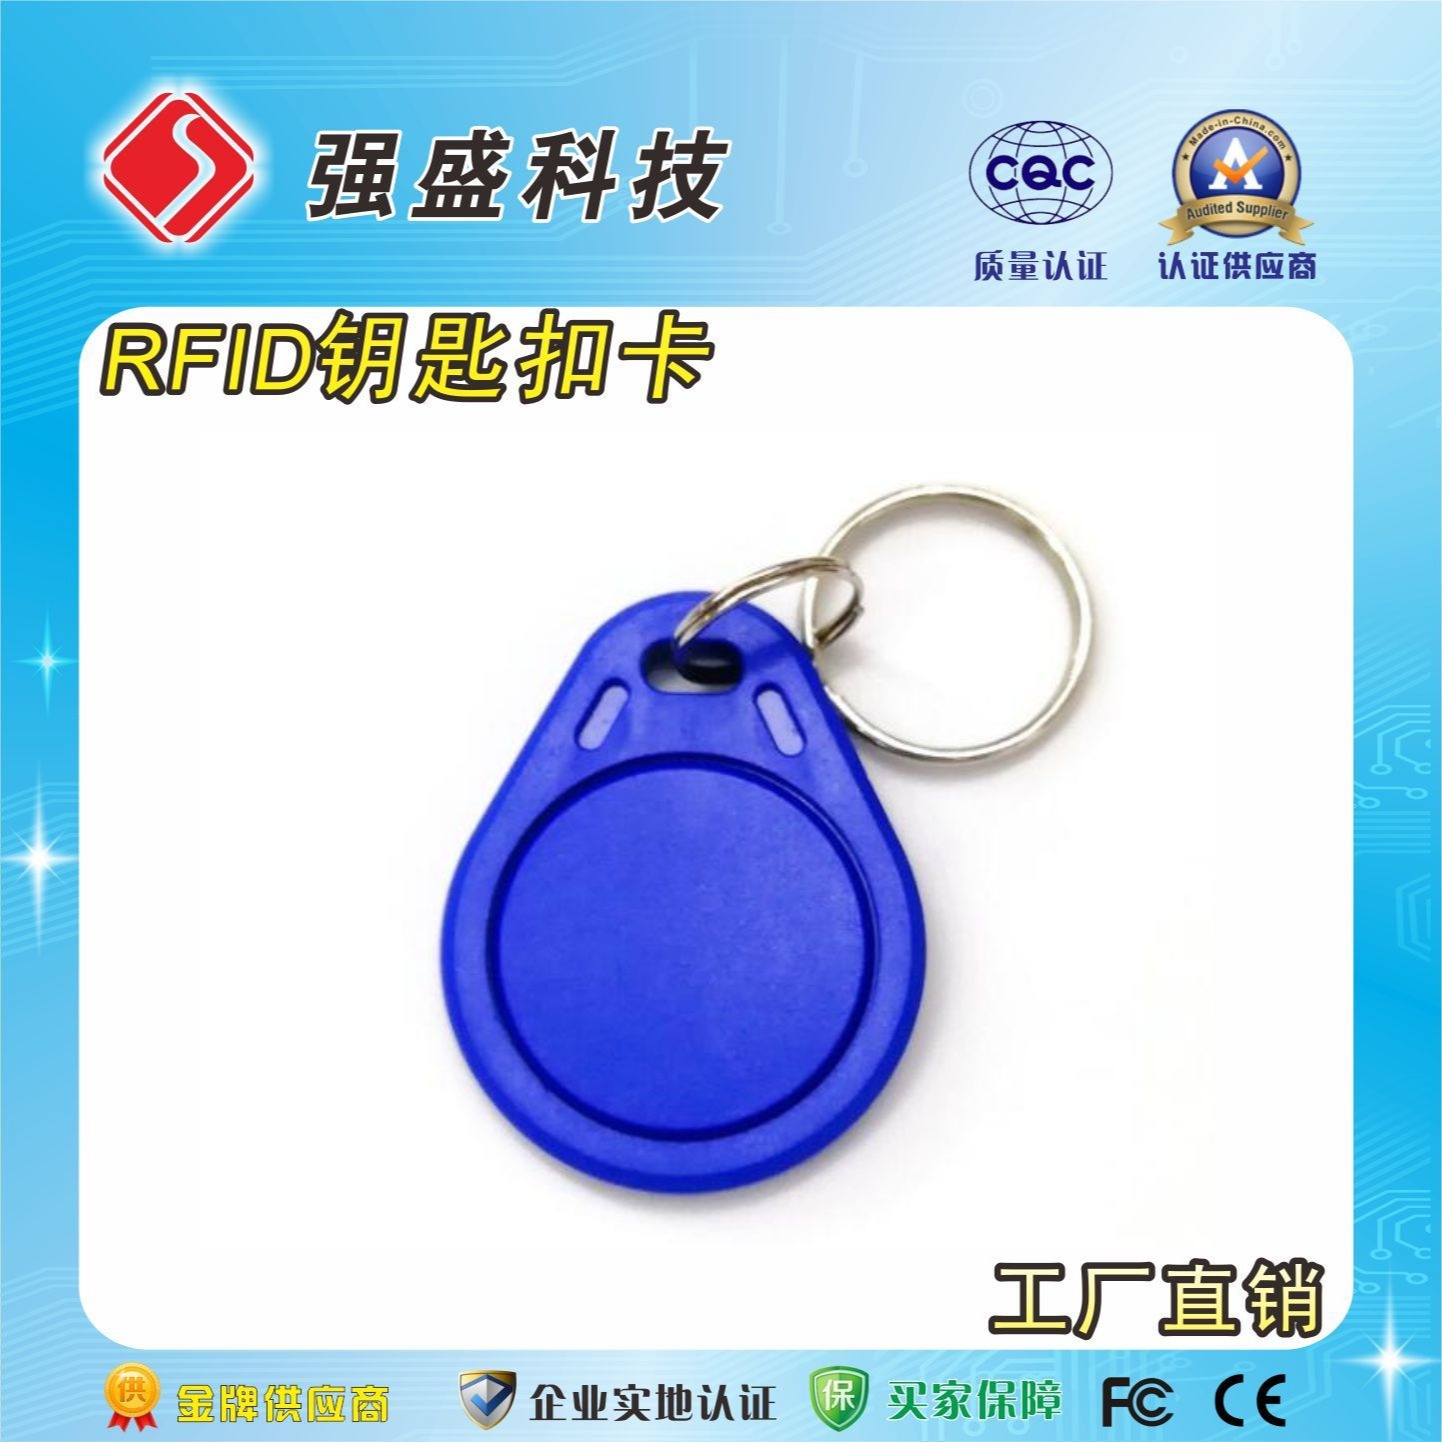 蓝色3号钥匙扣卡 ID钥匙扣 电梯卡 TK4100芯片卡钥匙扣